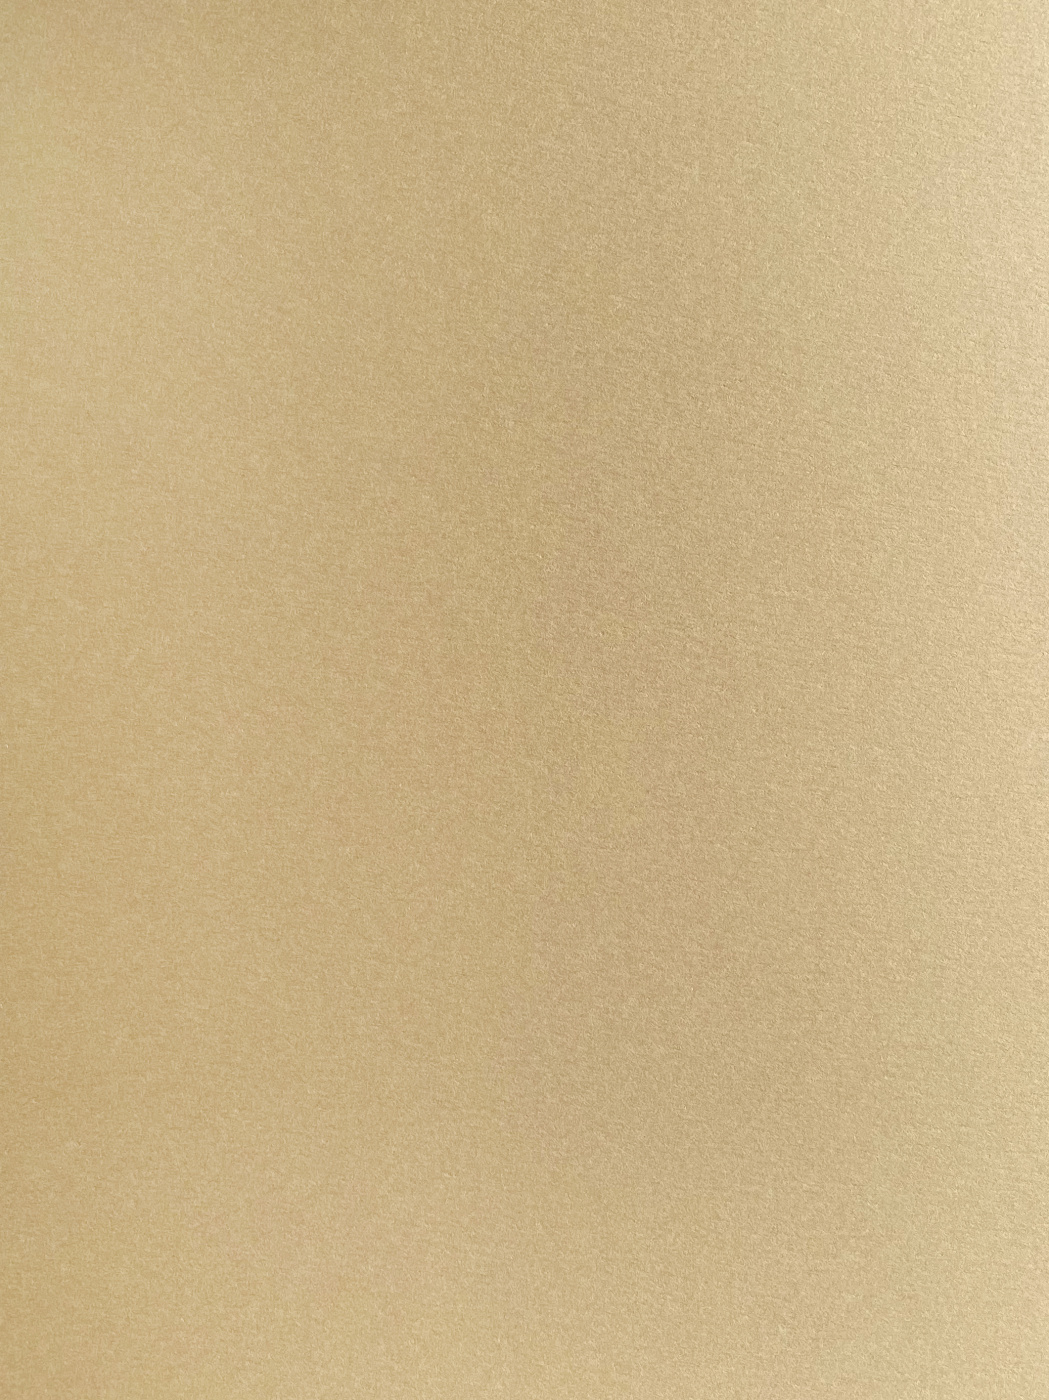 Бумага для пастели Малевичъ GrafArt А4 270 г, бежевая когтеточка пушок ряпушка пушок ковролин бежевая лапа греча